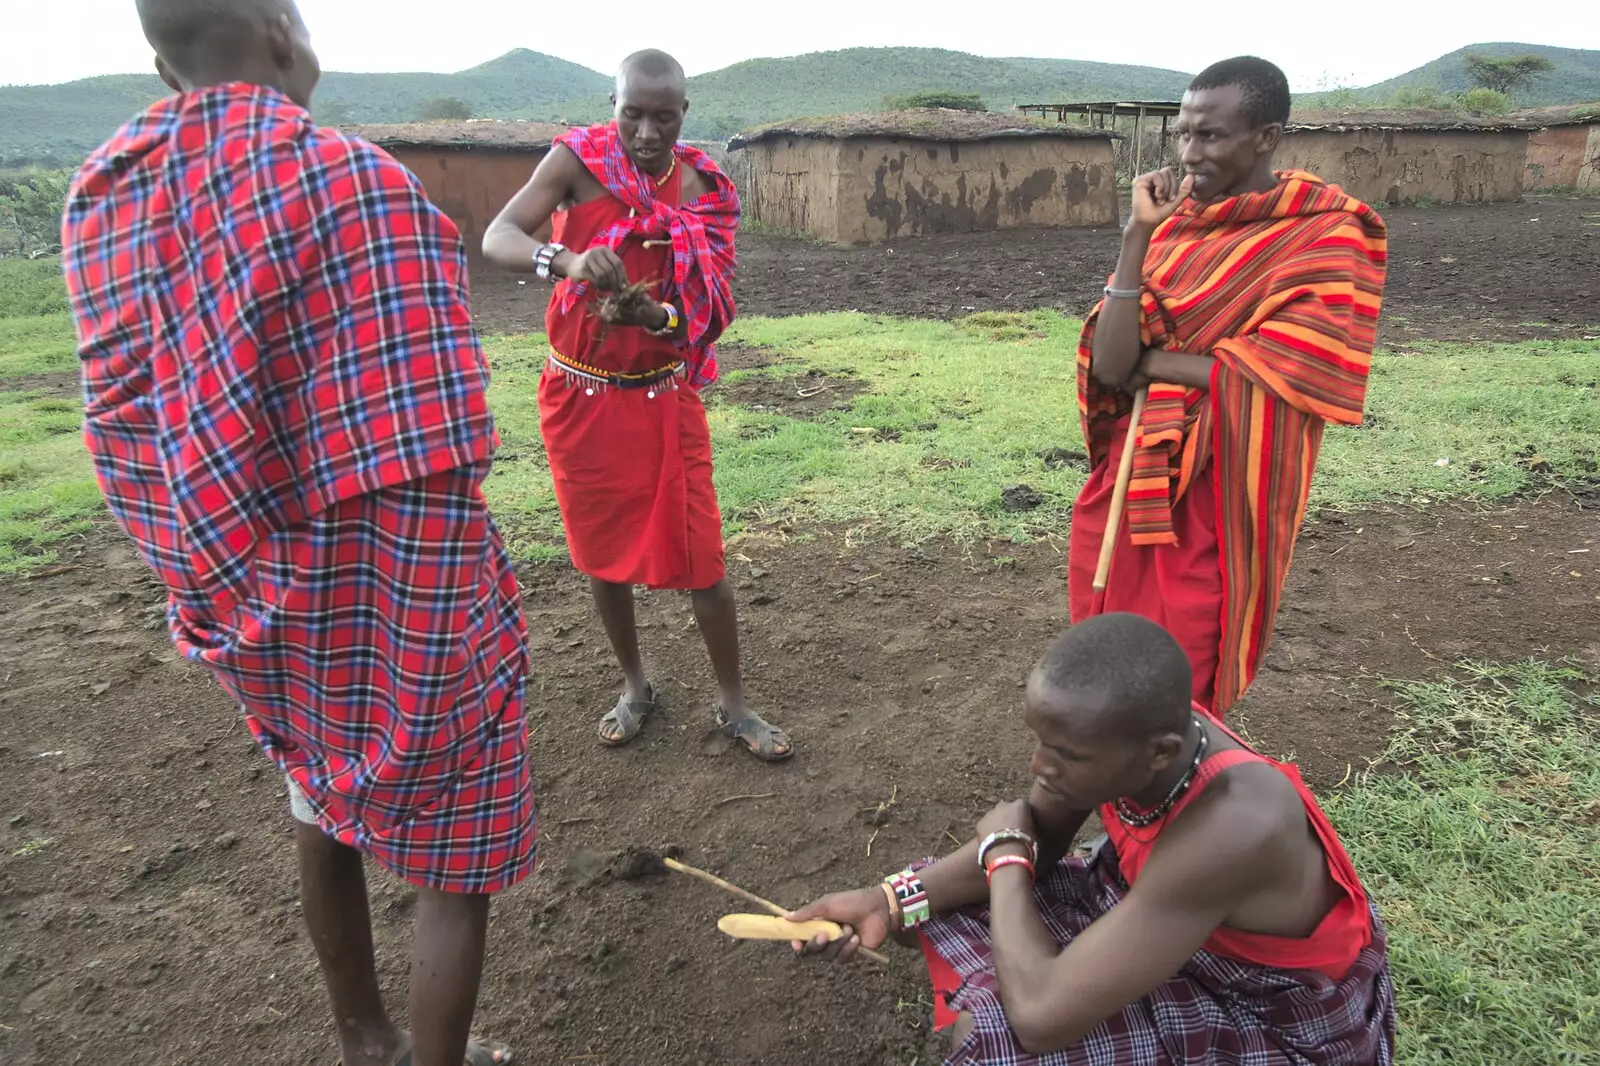 The bushcraft skill of friction firelighting, from Maasai Mara Safari and a Maasai Village, Ololaimutia, Kenya - 5th November 2010